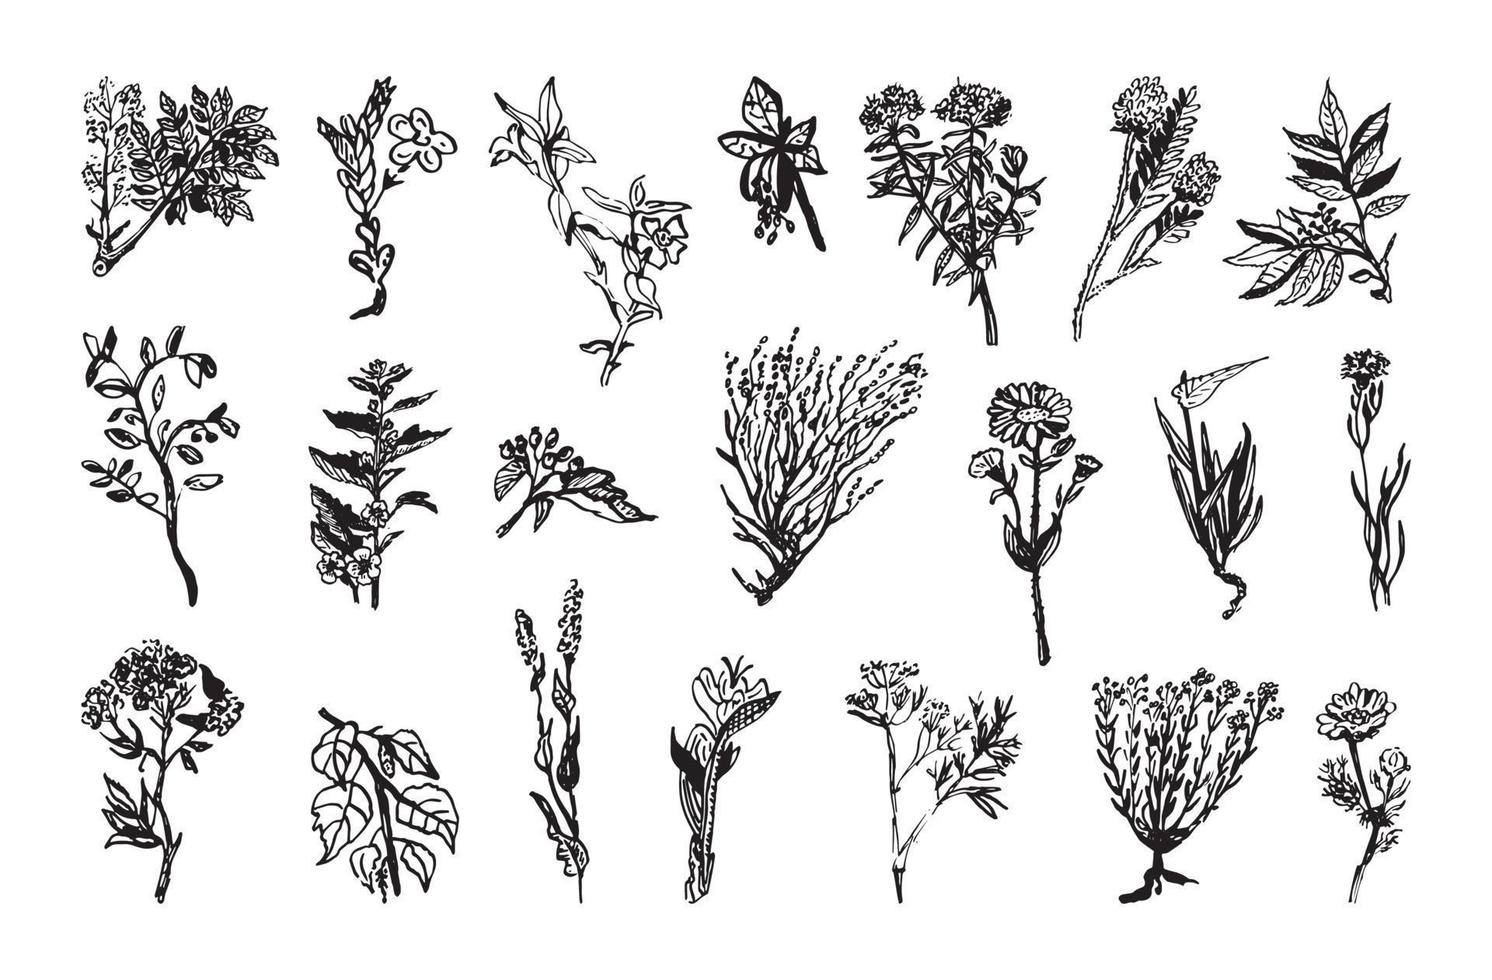 illustrazioni di piante medicinali in stile inchiostro artistico vettore